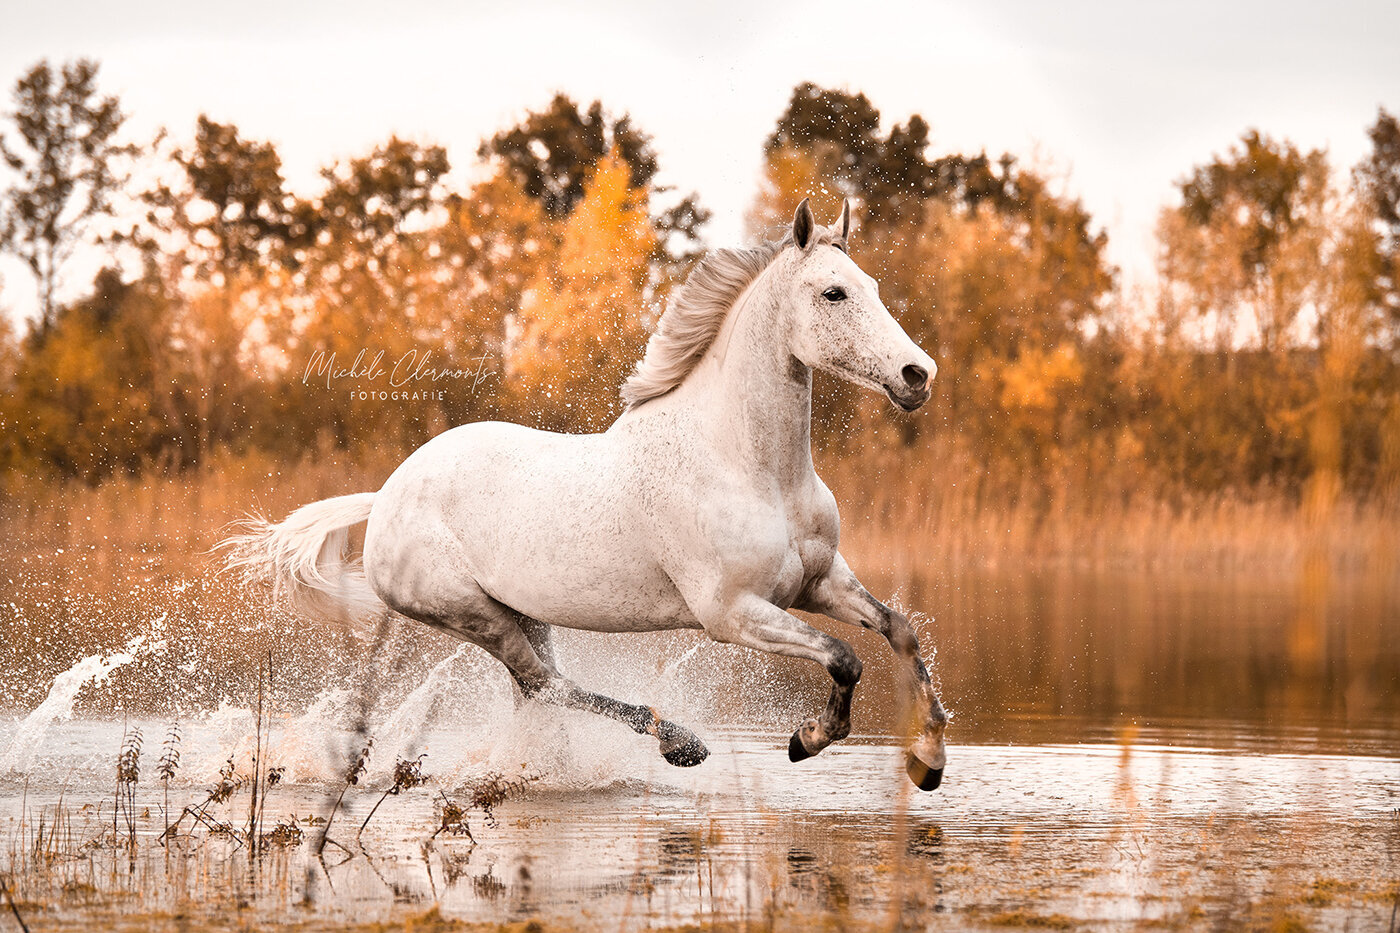 DSC_8893-paardenfotografie-michèle clermonts fotografie-low